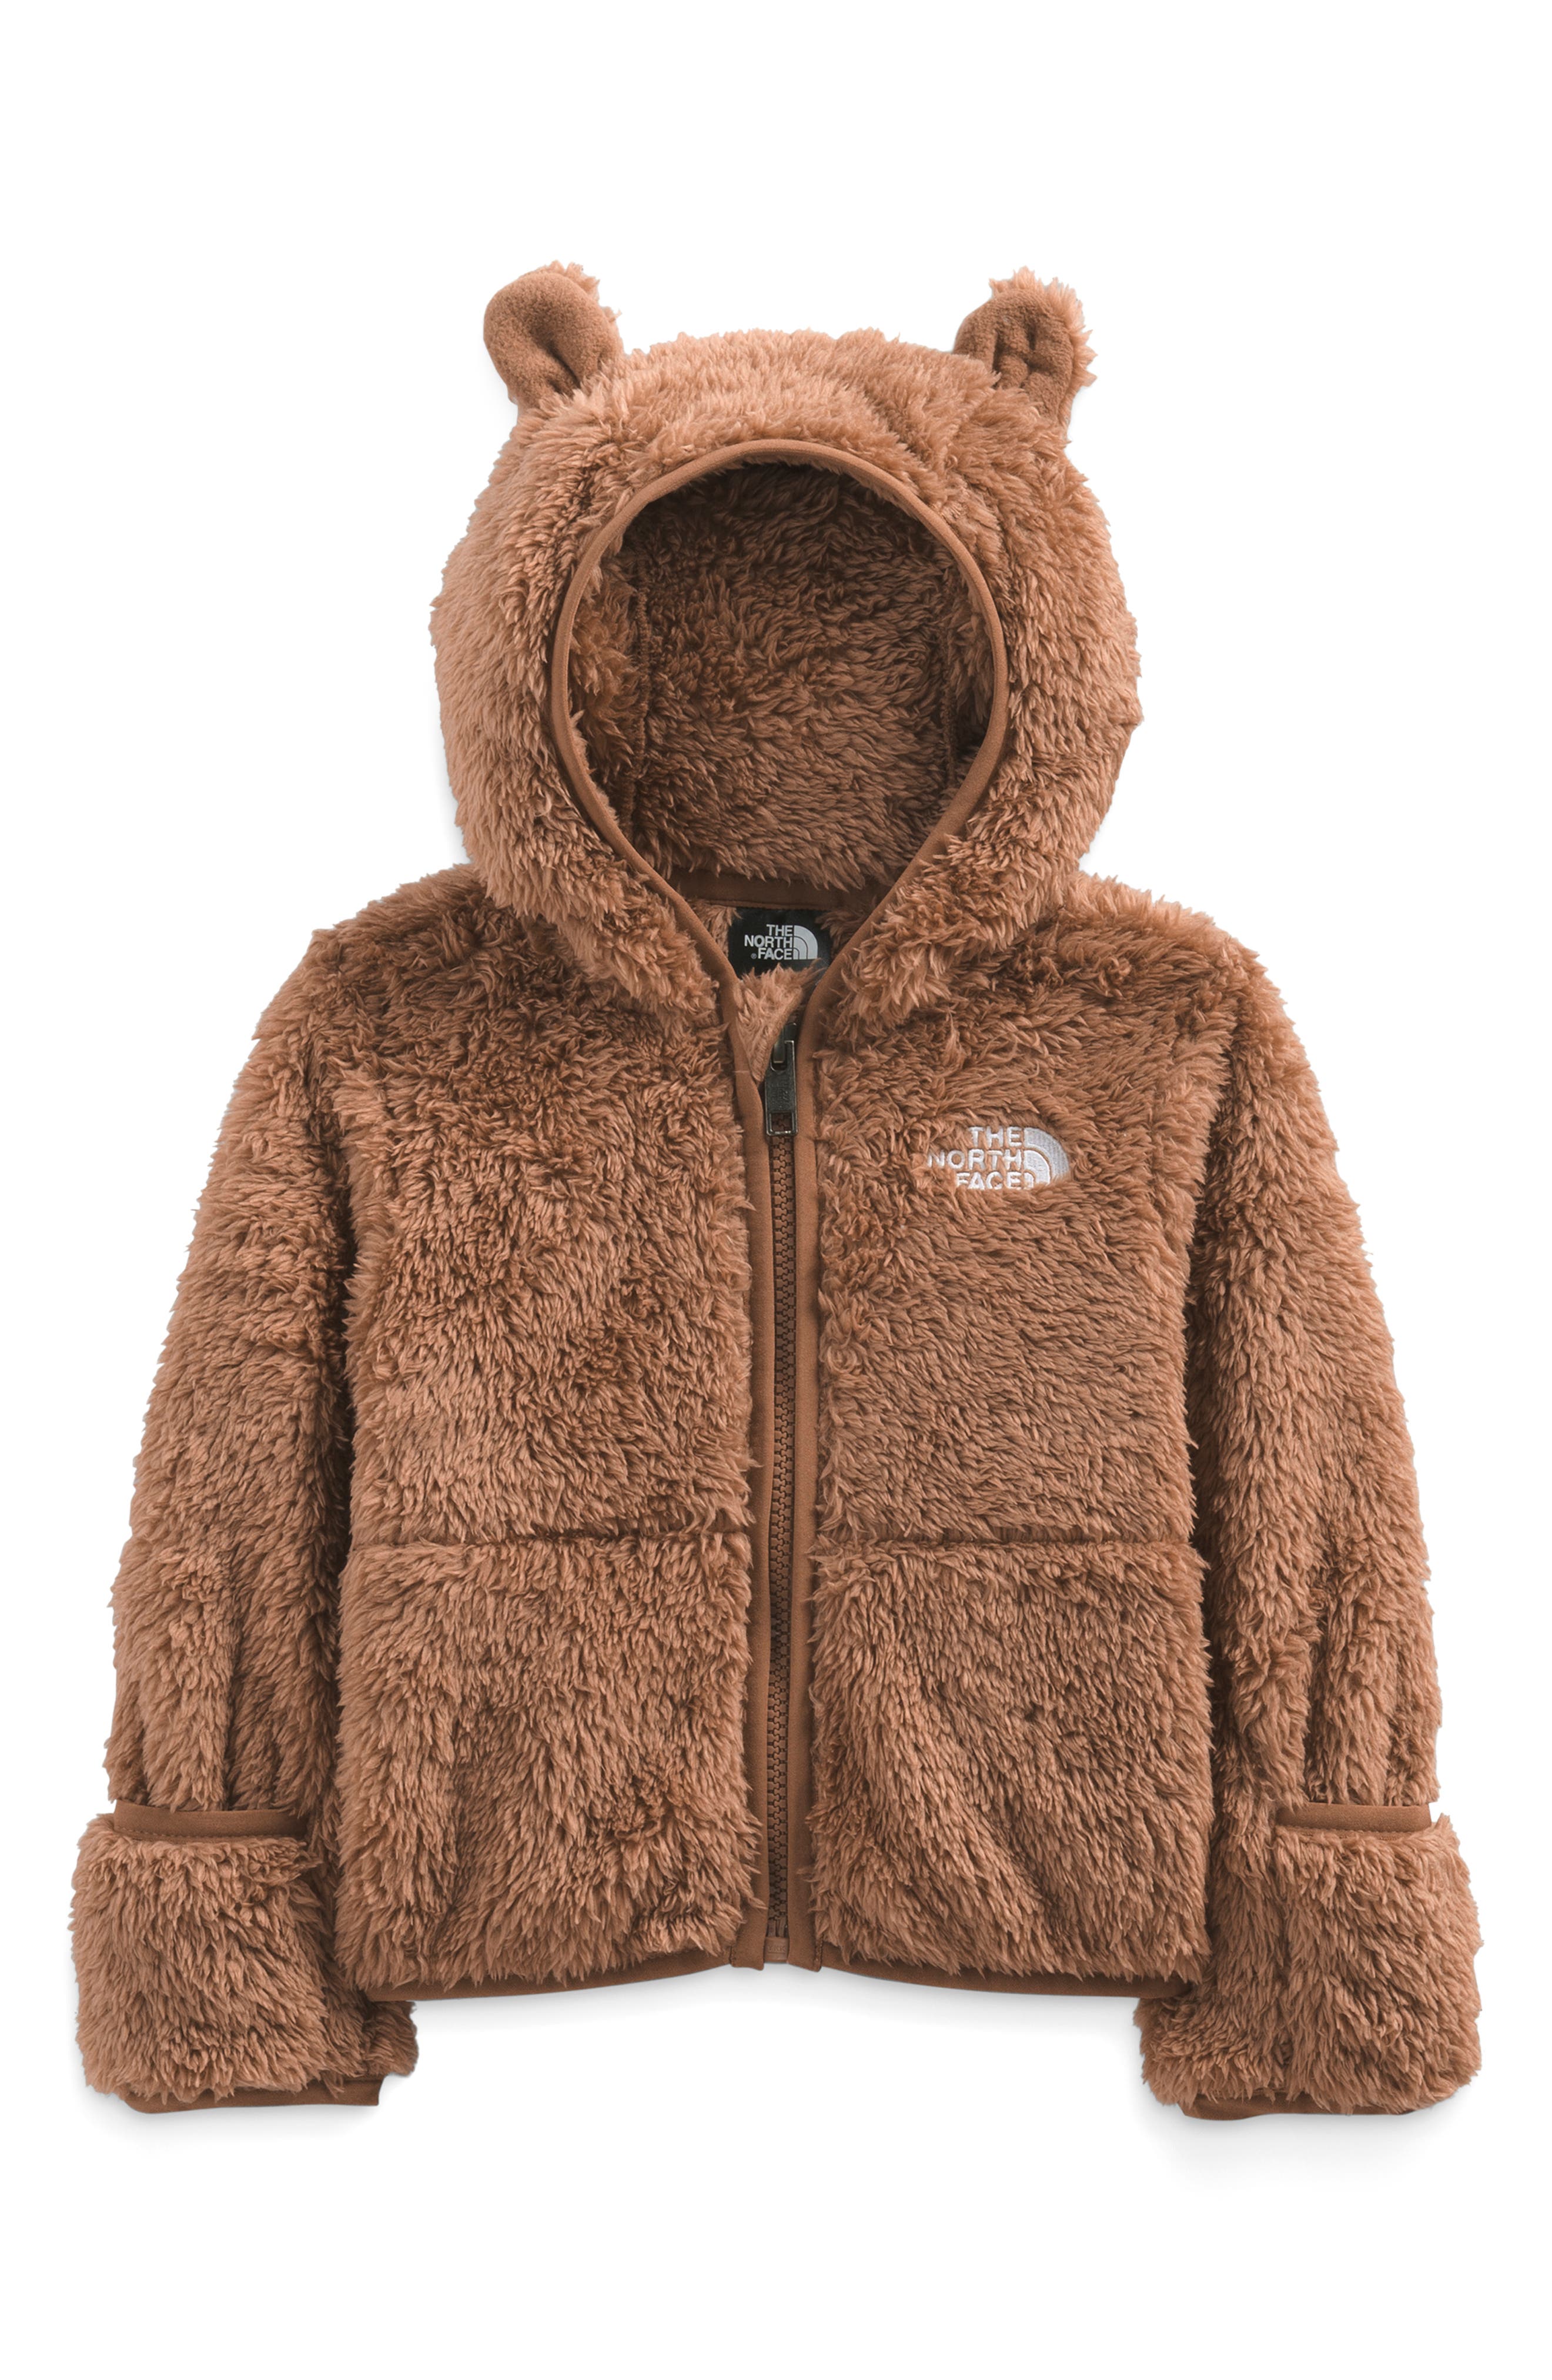 Baby Bear Full-Zip Hoodie in Toasted Brown at Nordstrom Nordstrom Clothing Sweaters Hoodies 